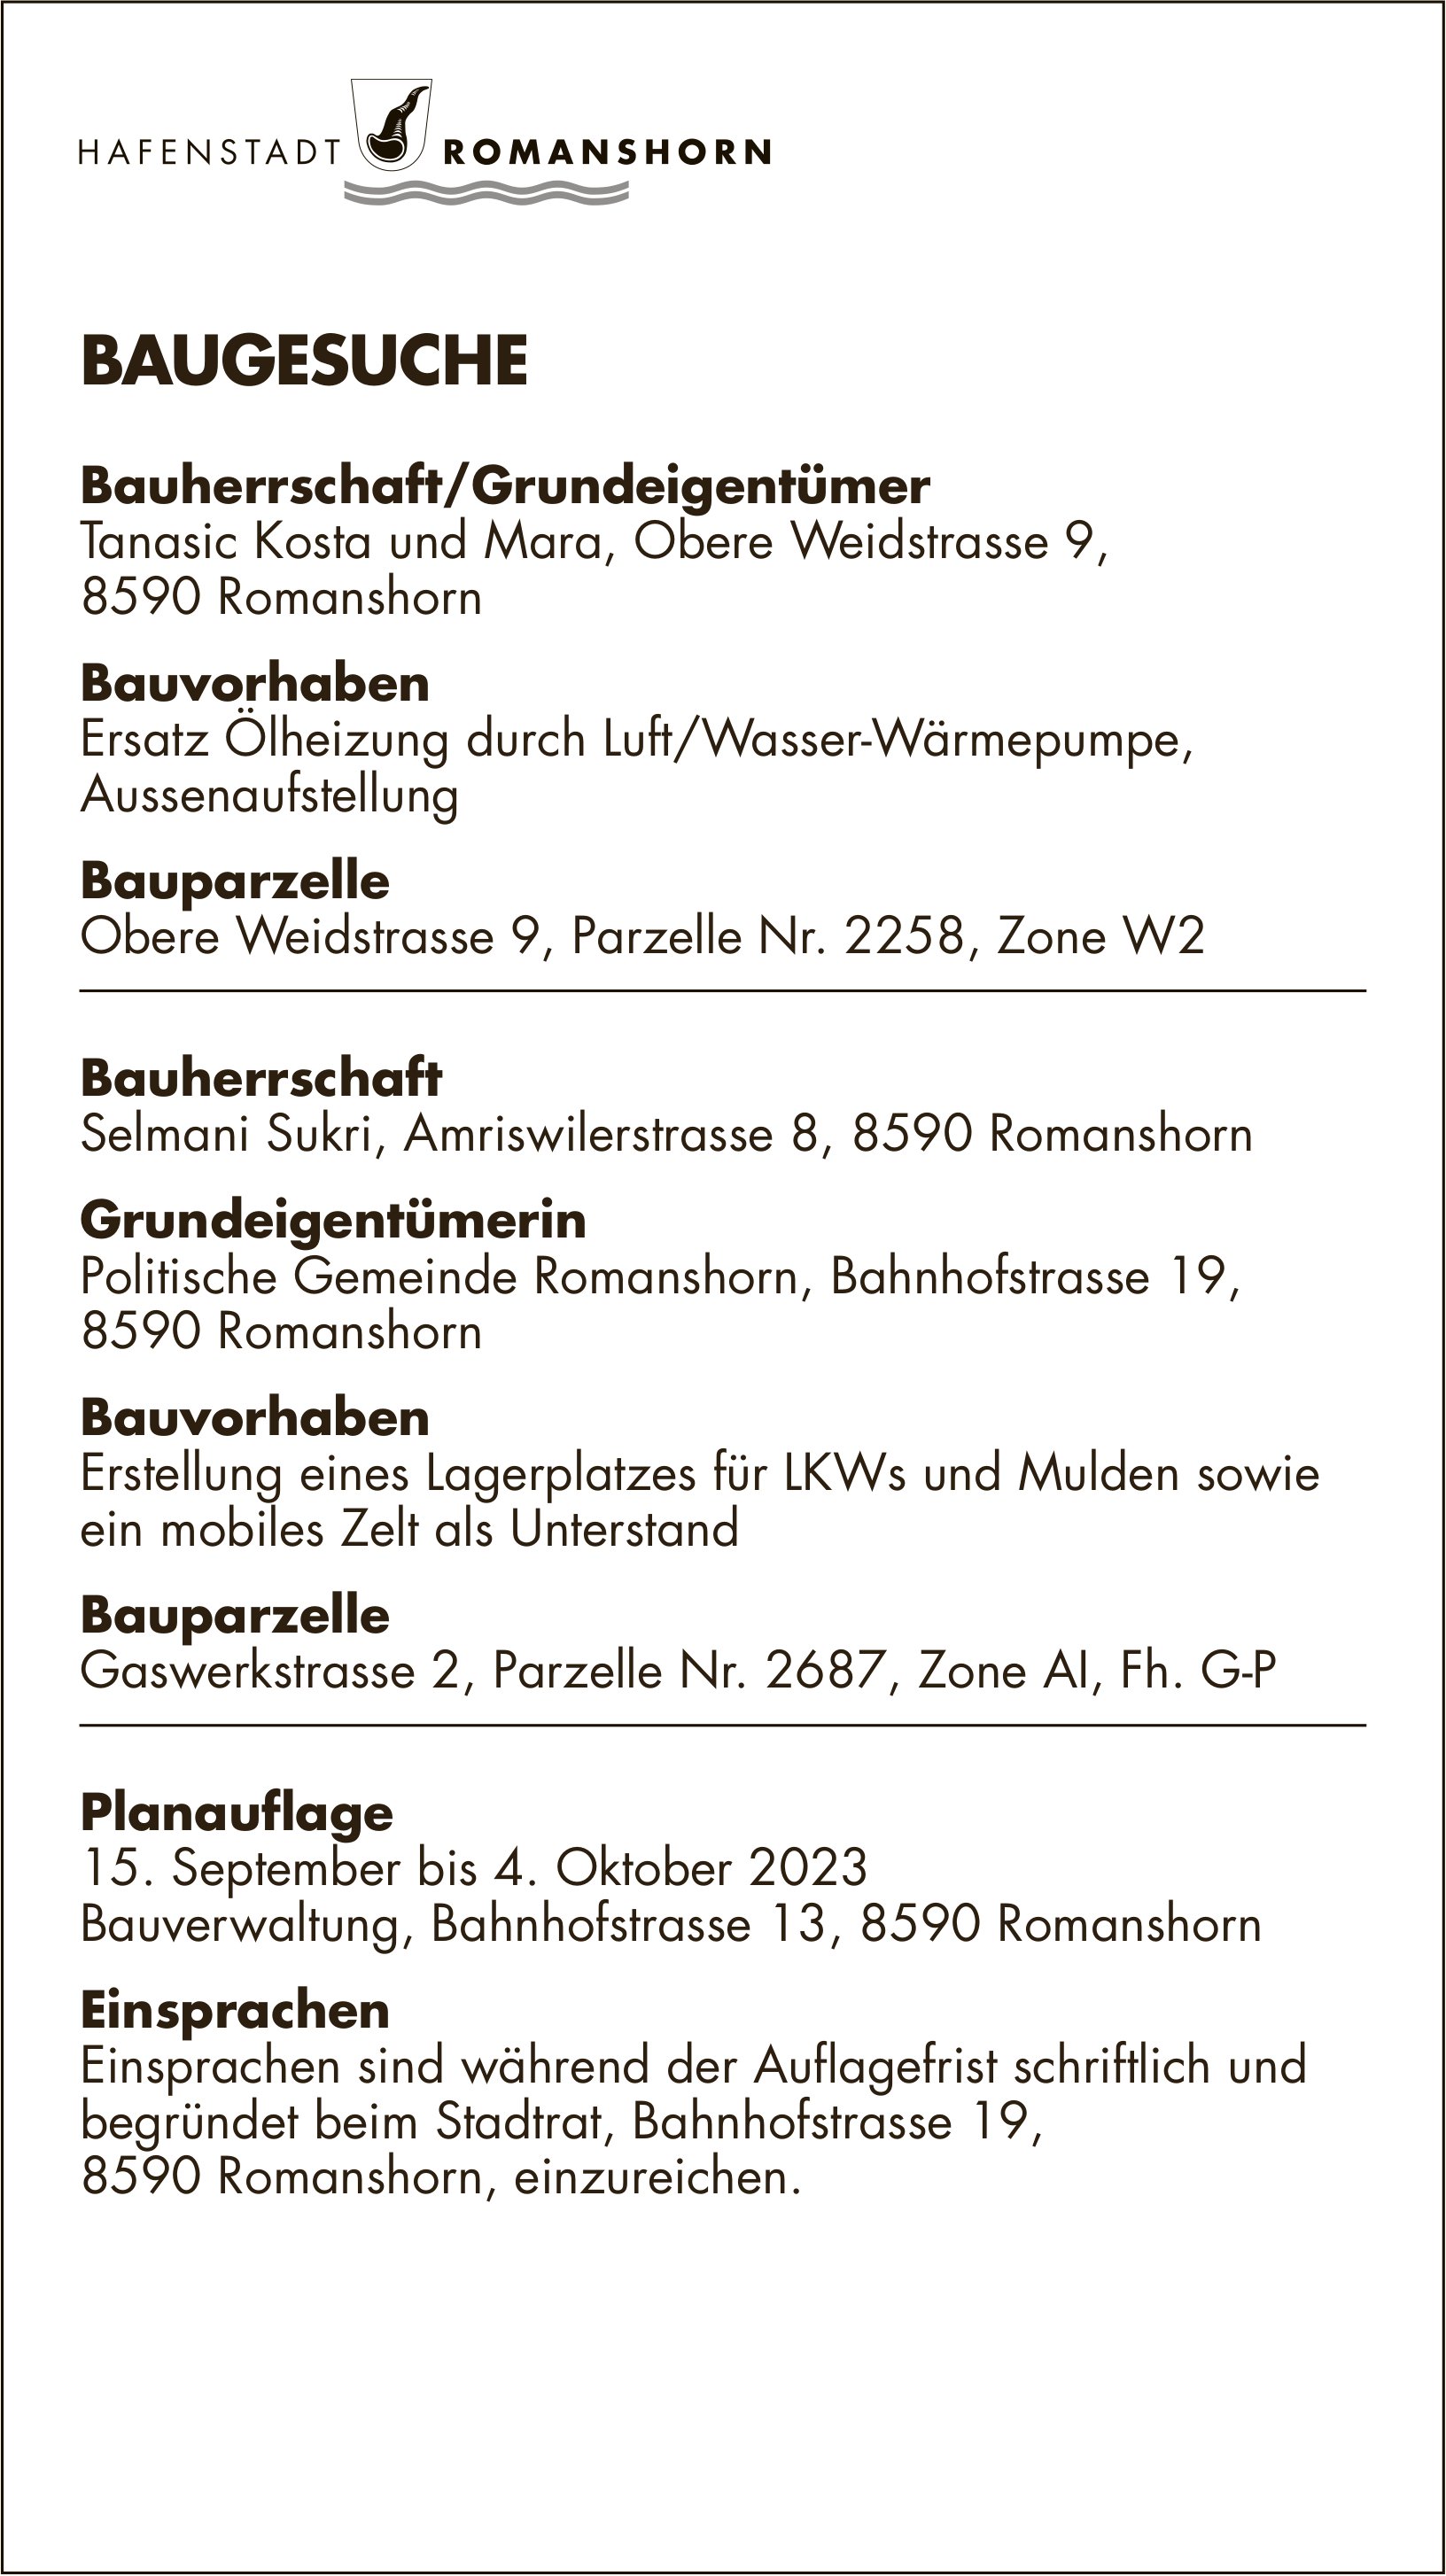 Baugesuche vom 15. September bis 4. Oktober 2023, Romanshorn - Bauherrschaft/Grundeigentümer